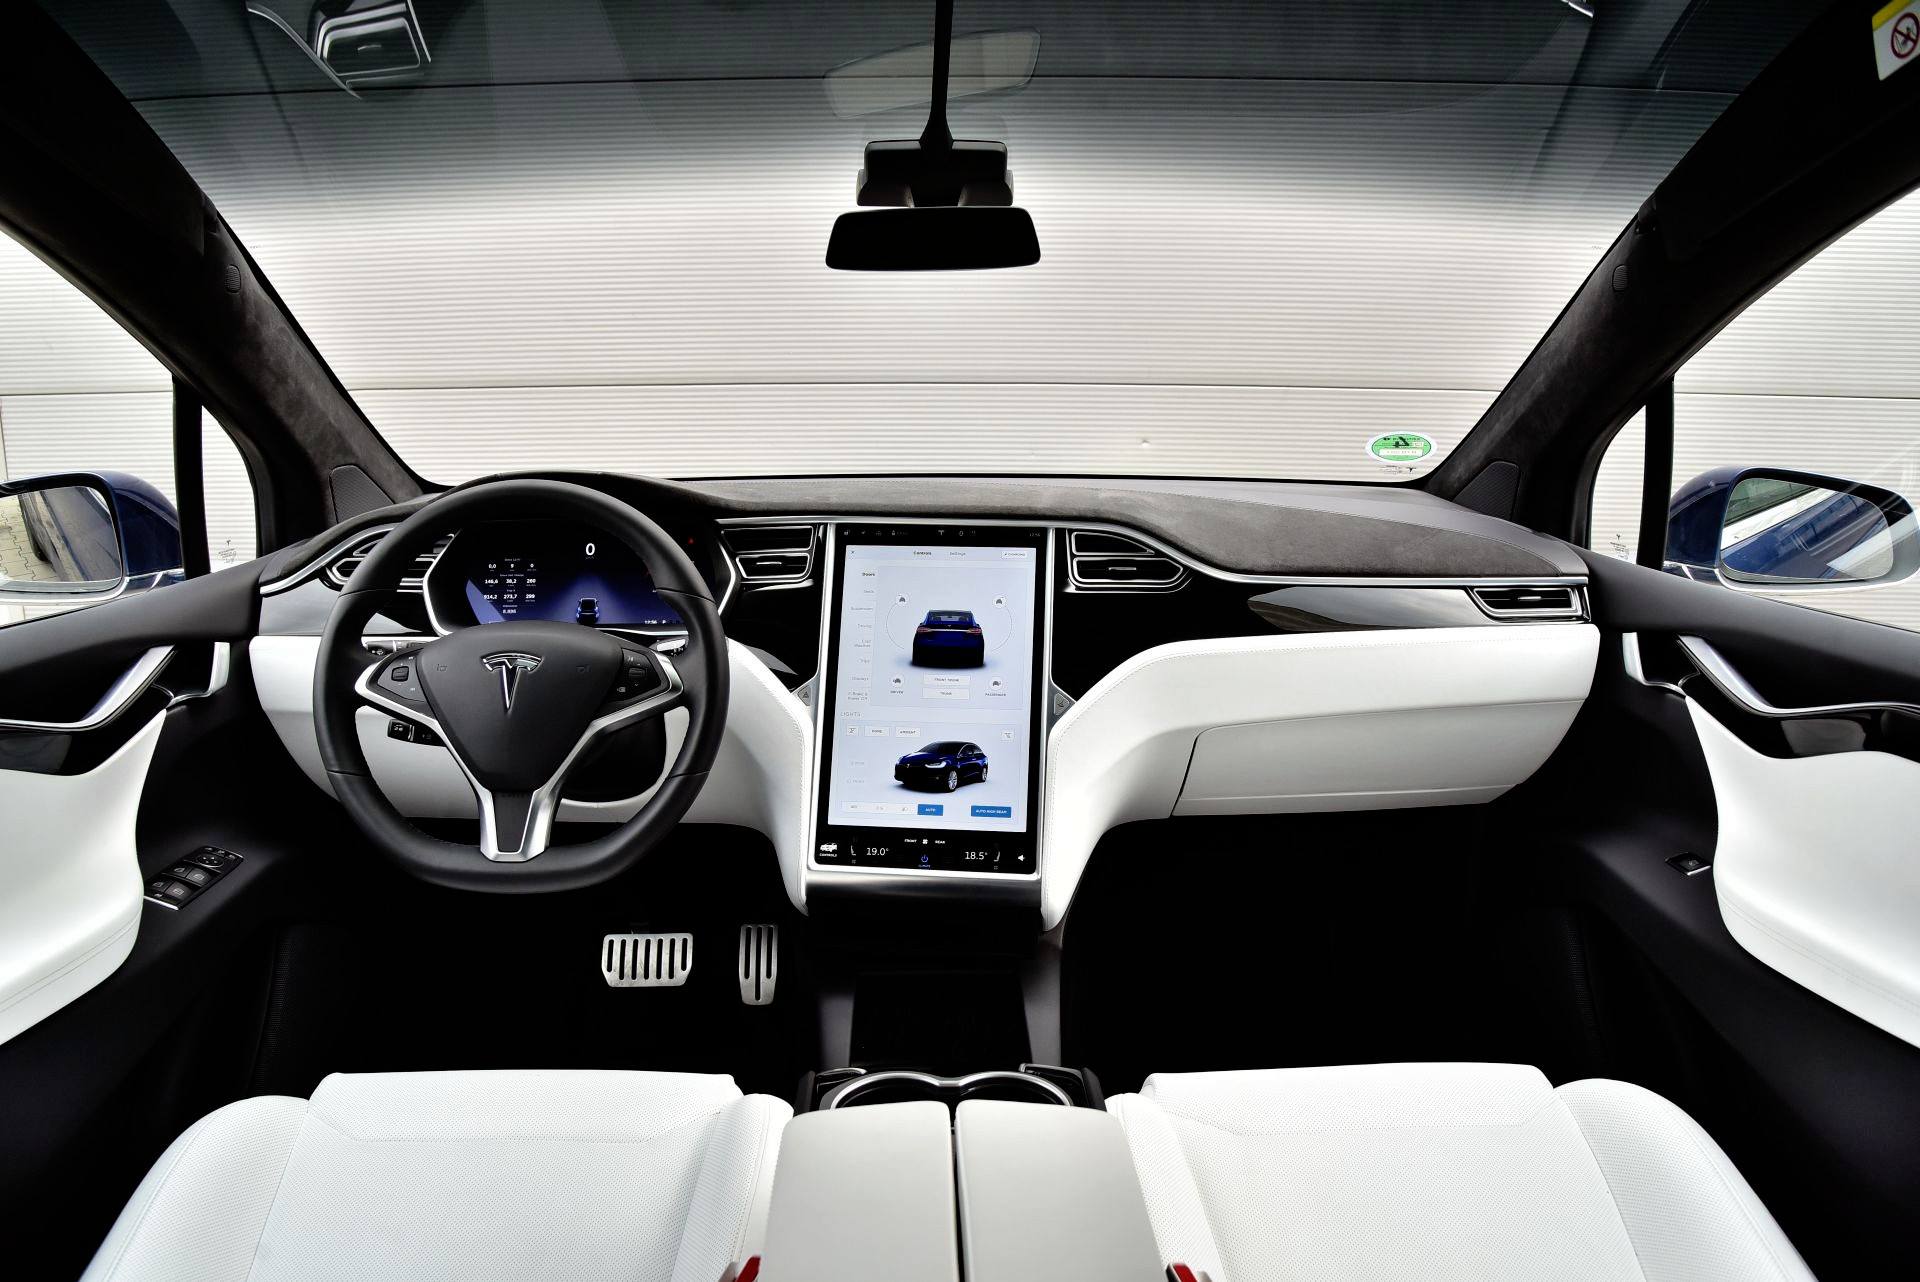 В свою очередь, аналоговые индикаторы были заменены вторым широким экраном , на котором представлены многочисленные данные о скорости, энергопотреблении и текущем отображении проезжающих автомобилей